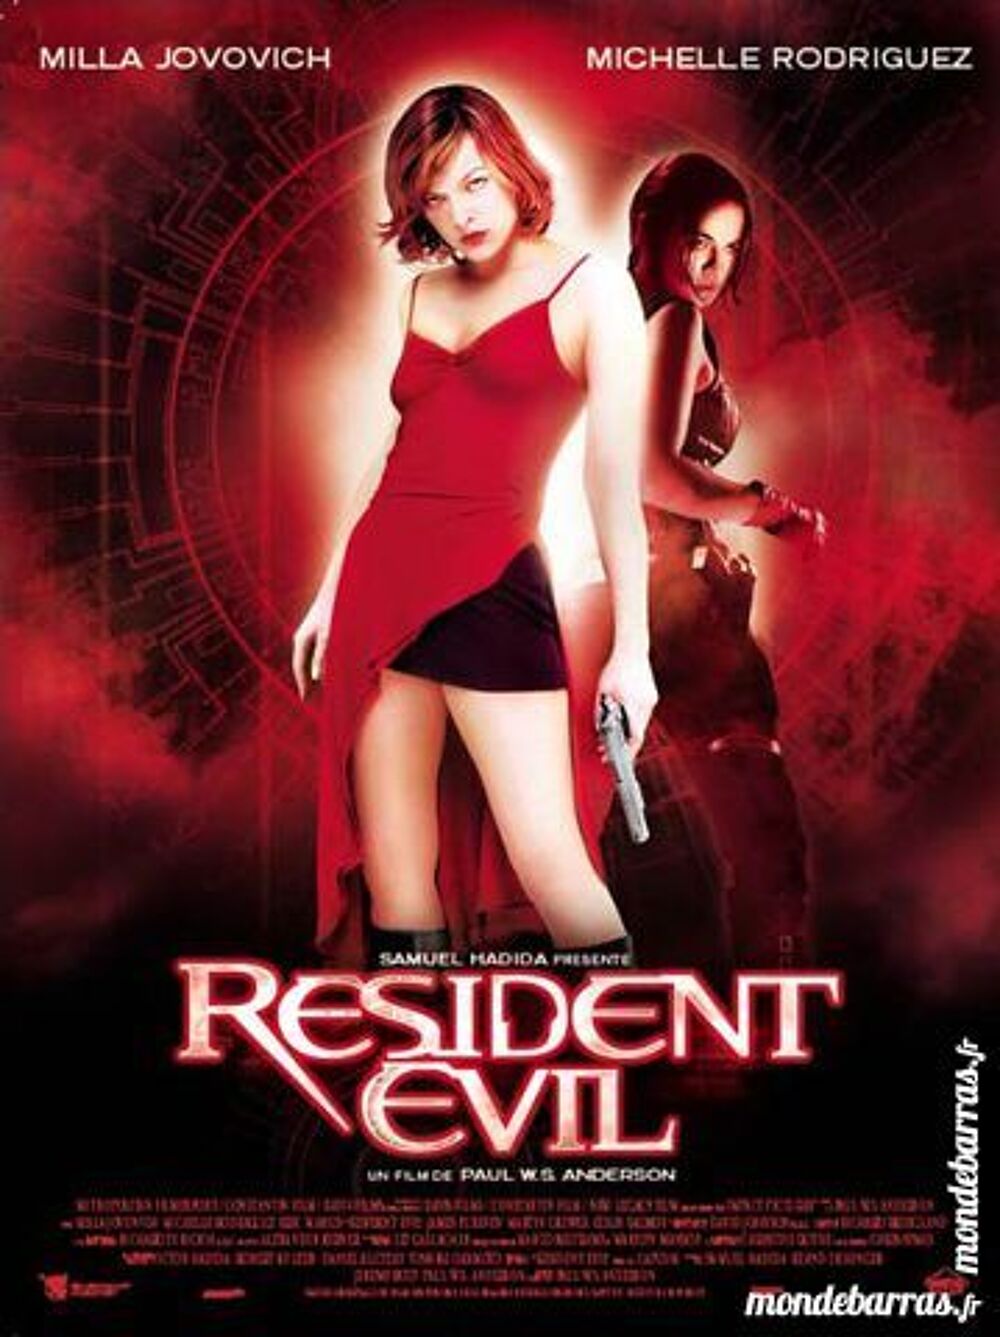 K7 Vhs: Resident Evil (55) DVD et blu-ray